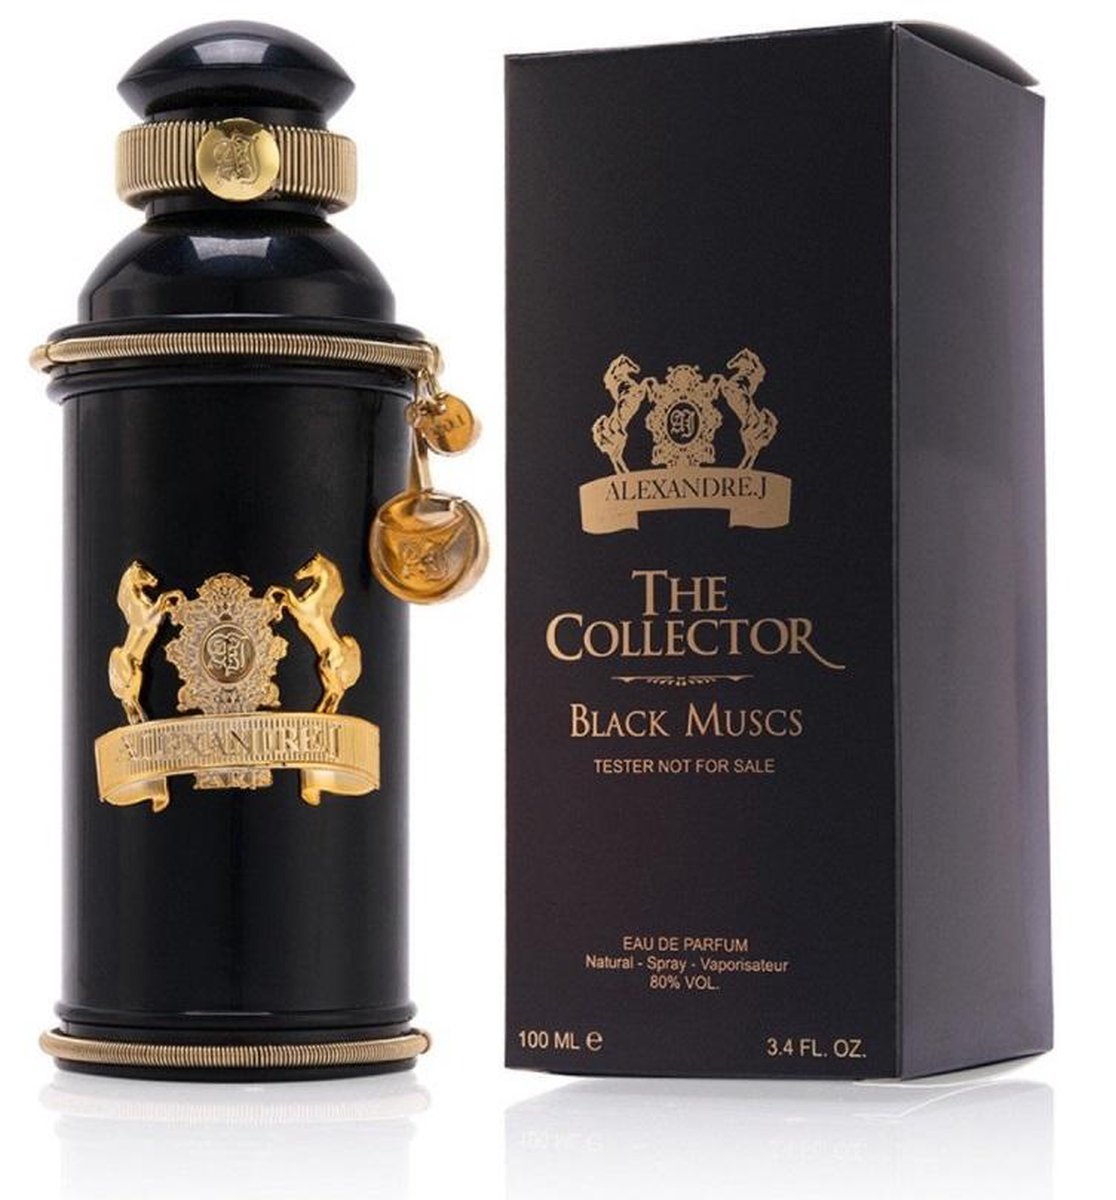 Alexandre J. - The Collector Black Muscs - Eau de parfum - 100ml